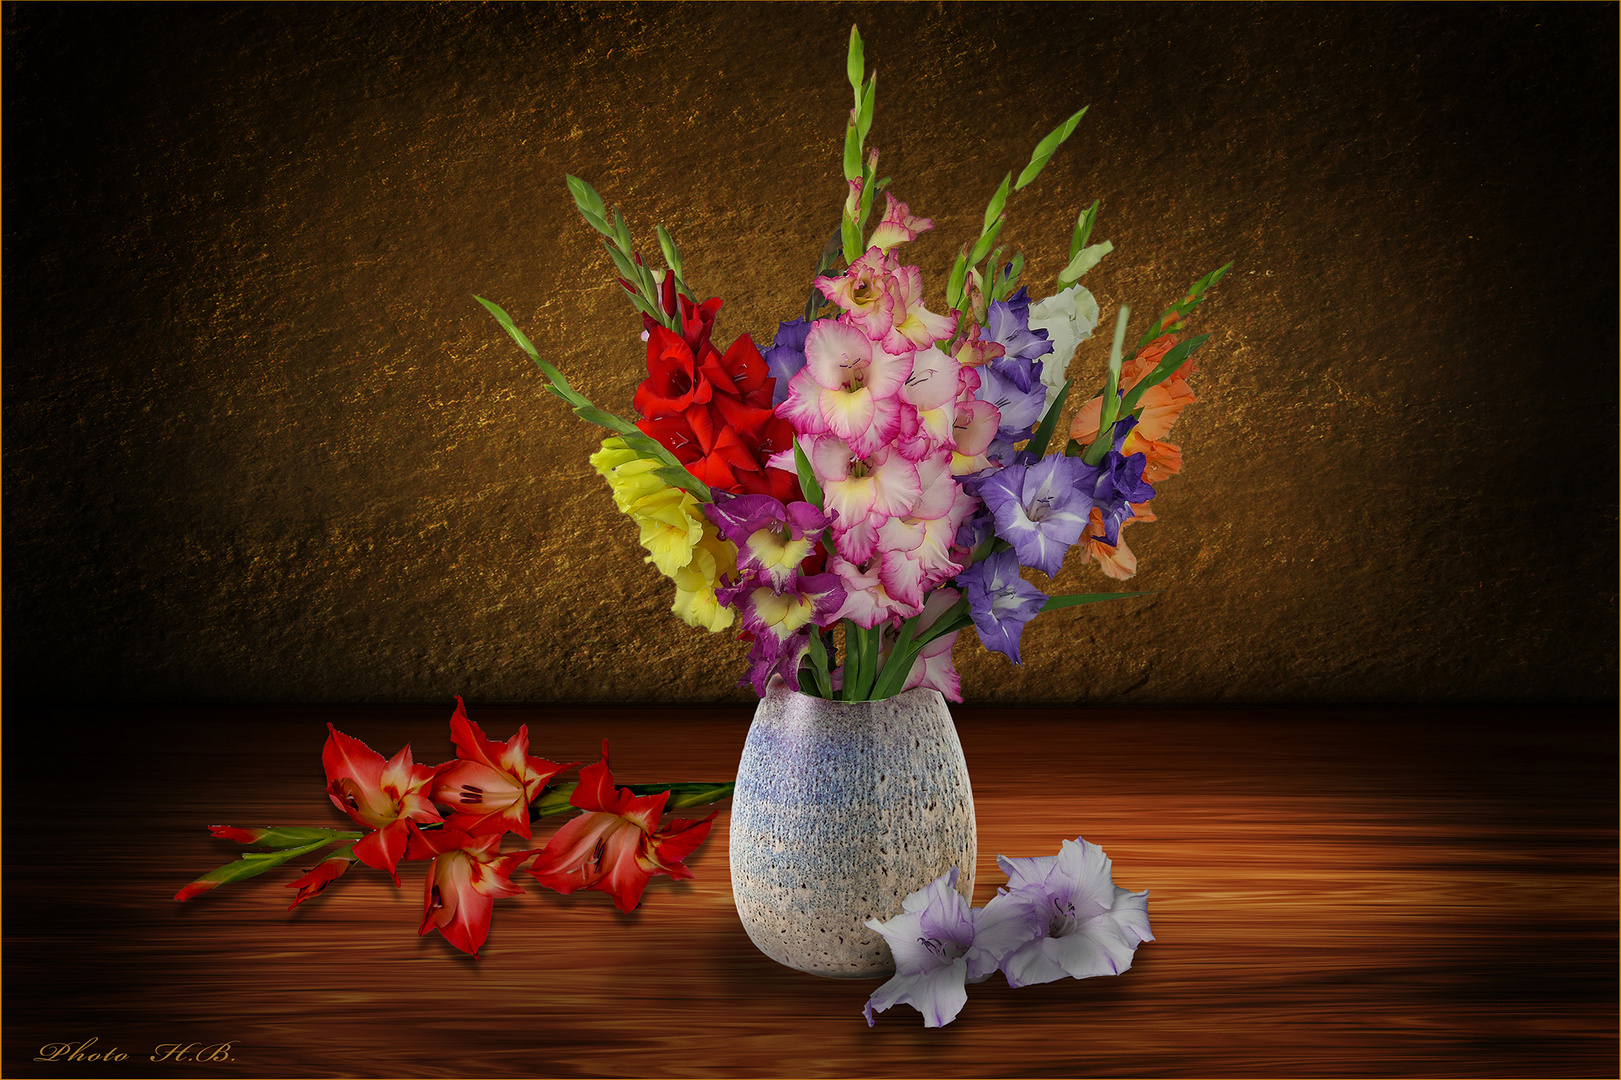 Farbenvielfalt - Stillleben mit Gladiolen